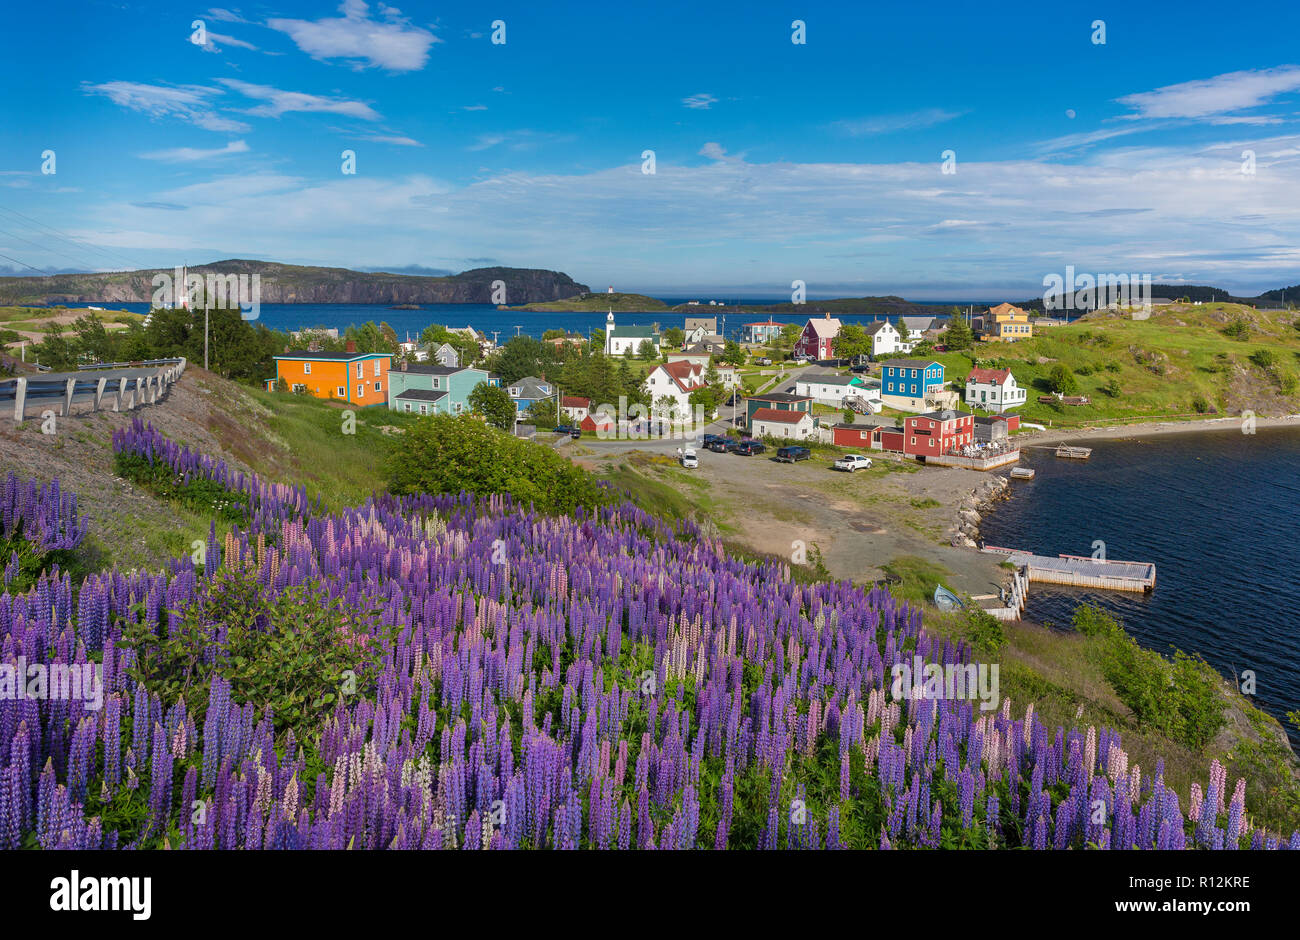 Trinità, Terranova, CANADA - viola i lupini bloom presso la cittadina di Trinità. Lupinus. Foto Stock